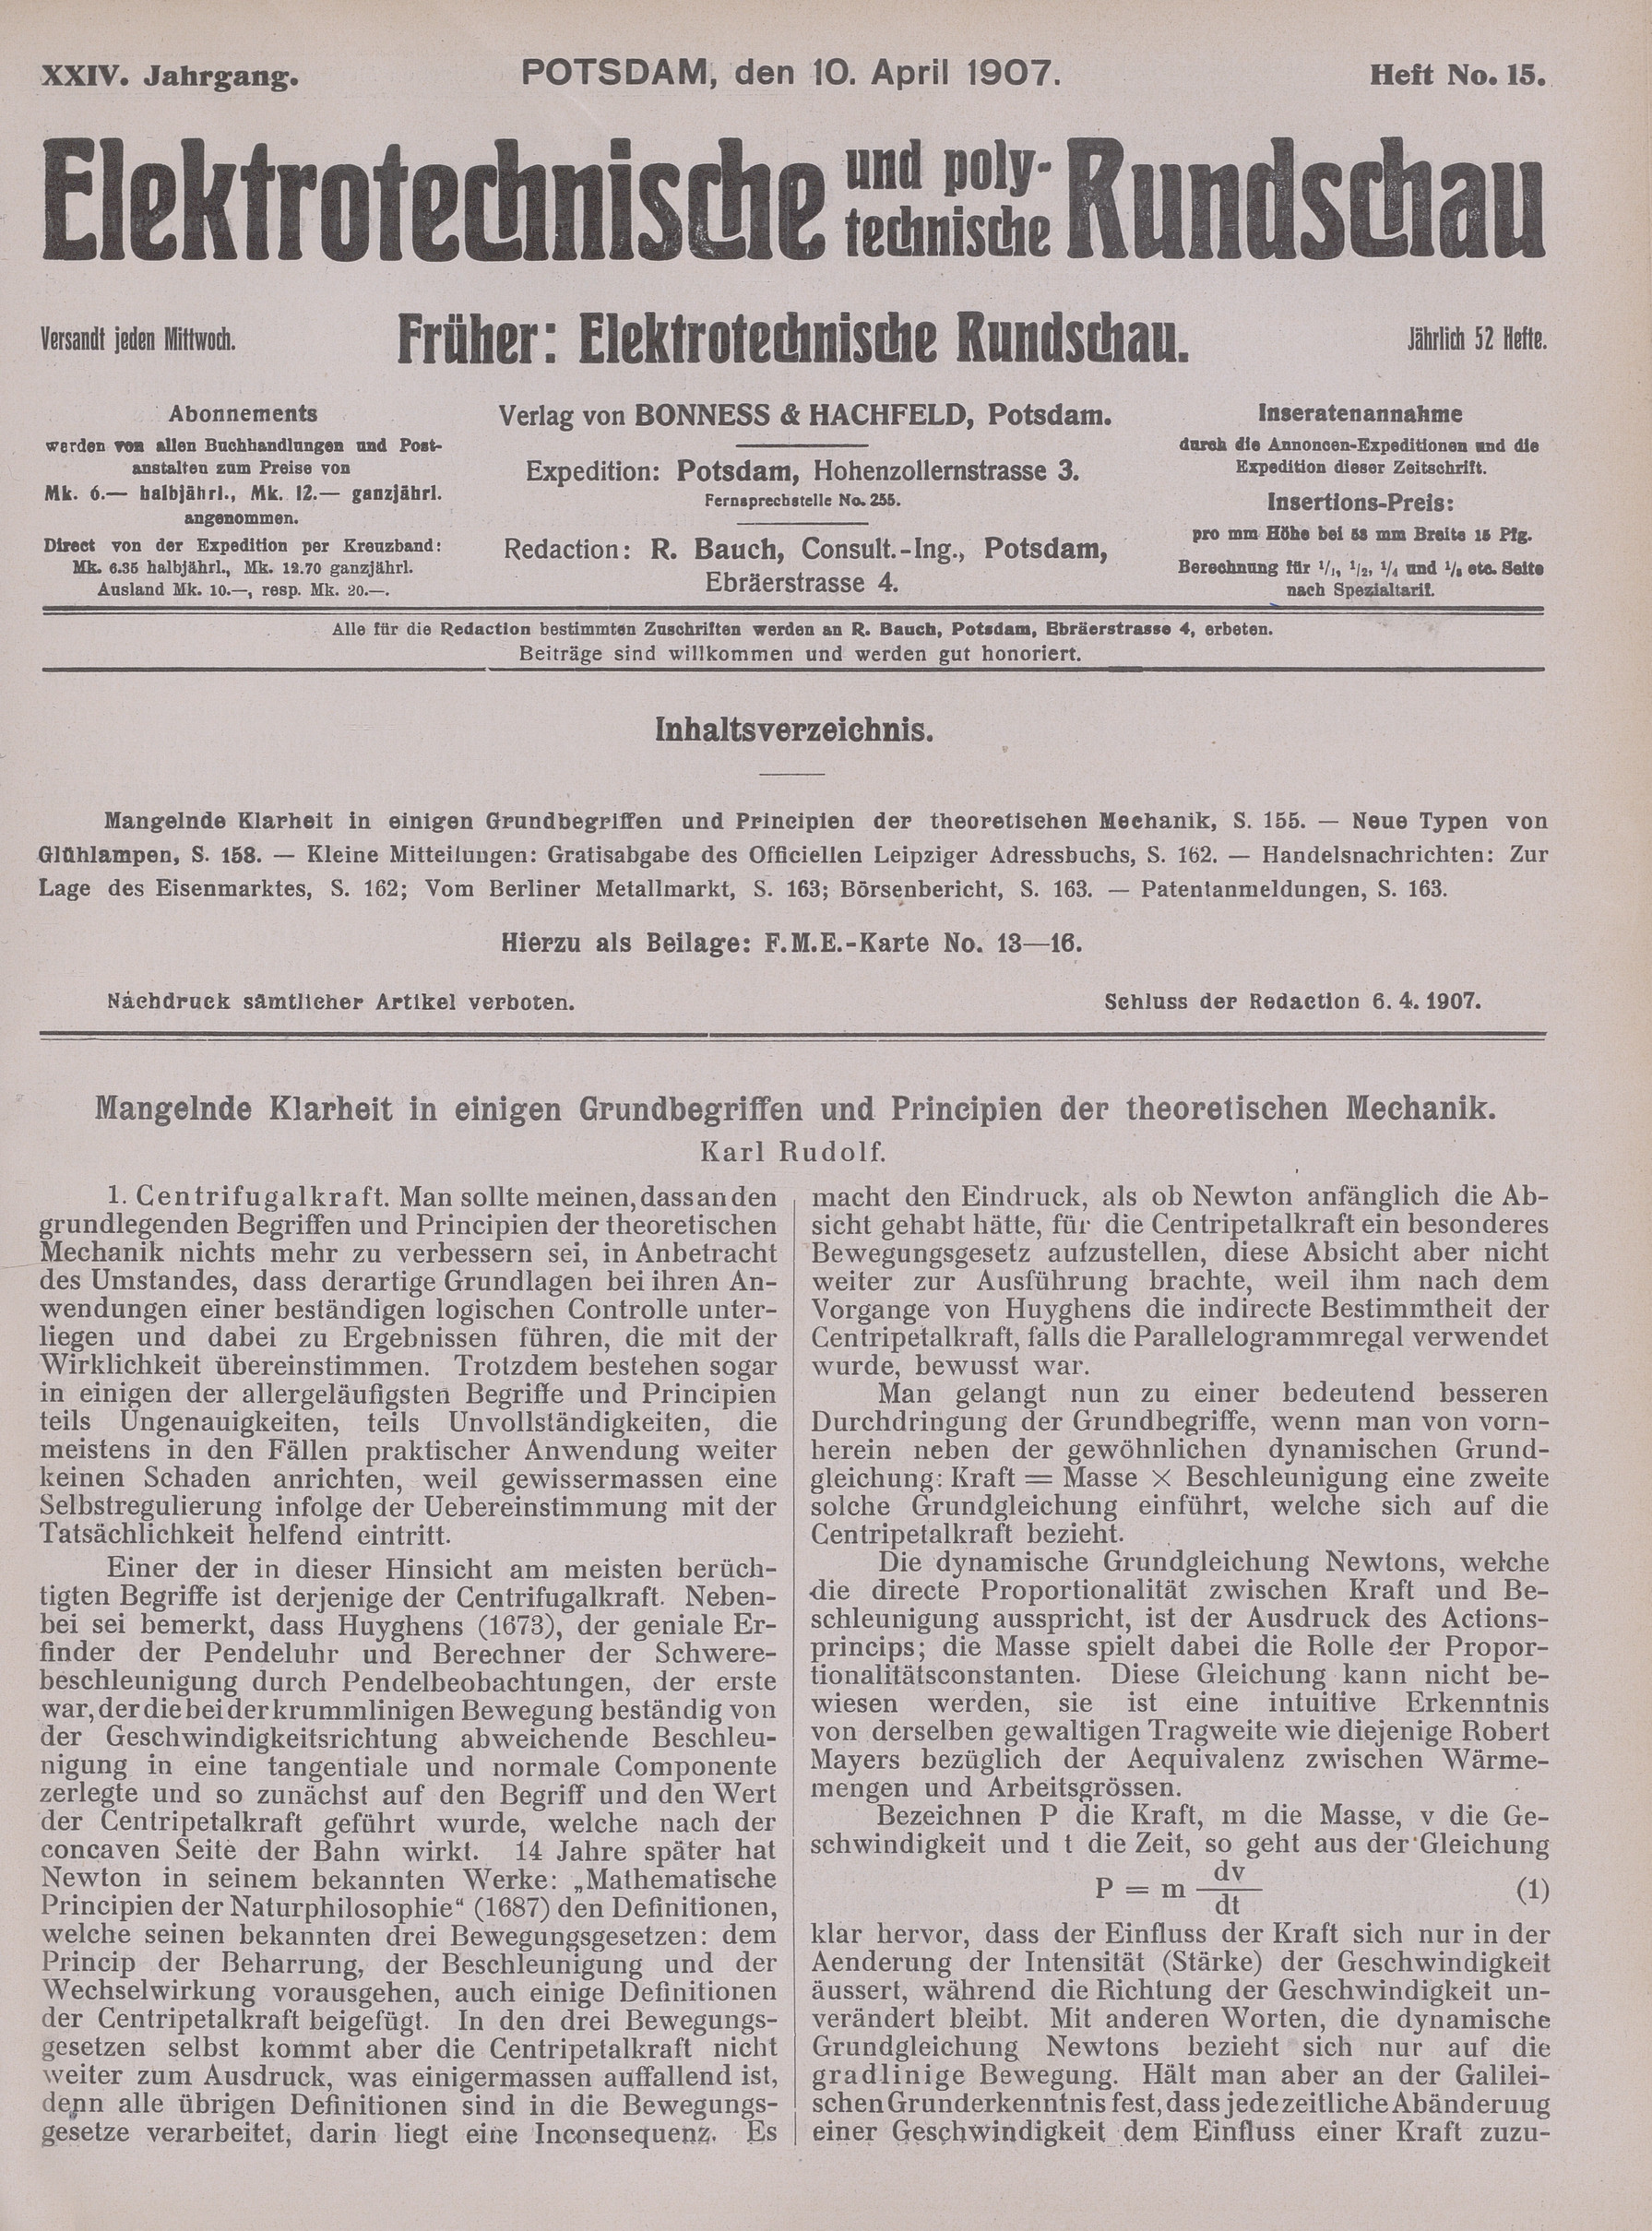 Elektrotechnische und polytechnische Rundschau, XXIV. Jahrgang, Heft No. 15